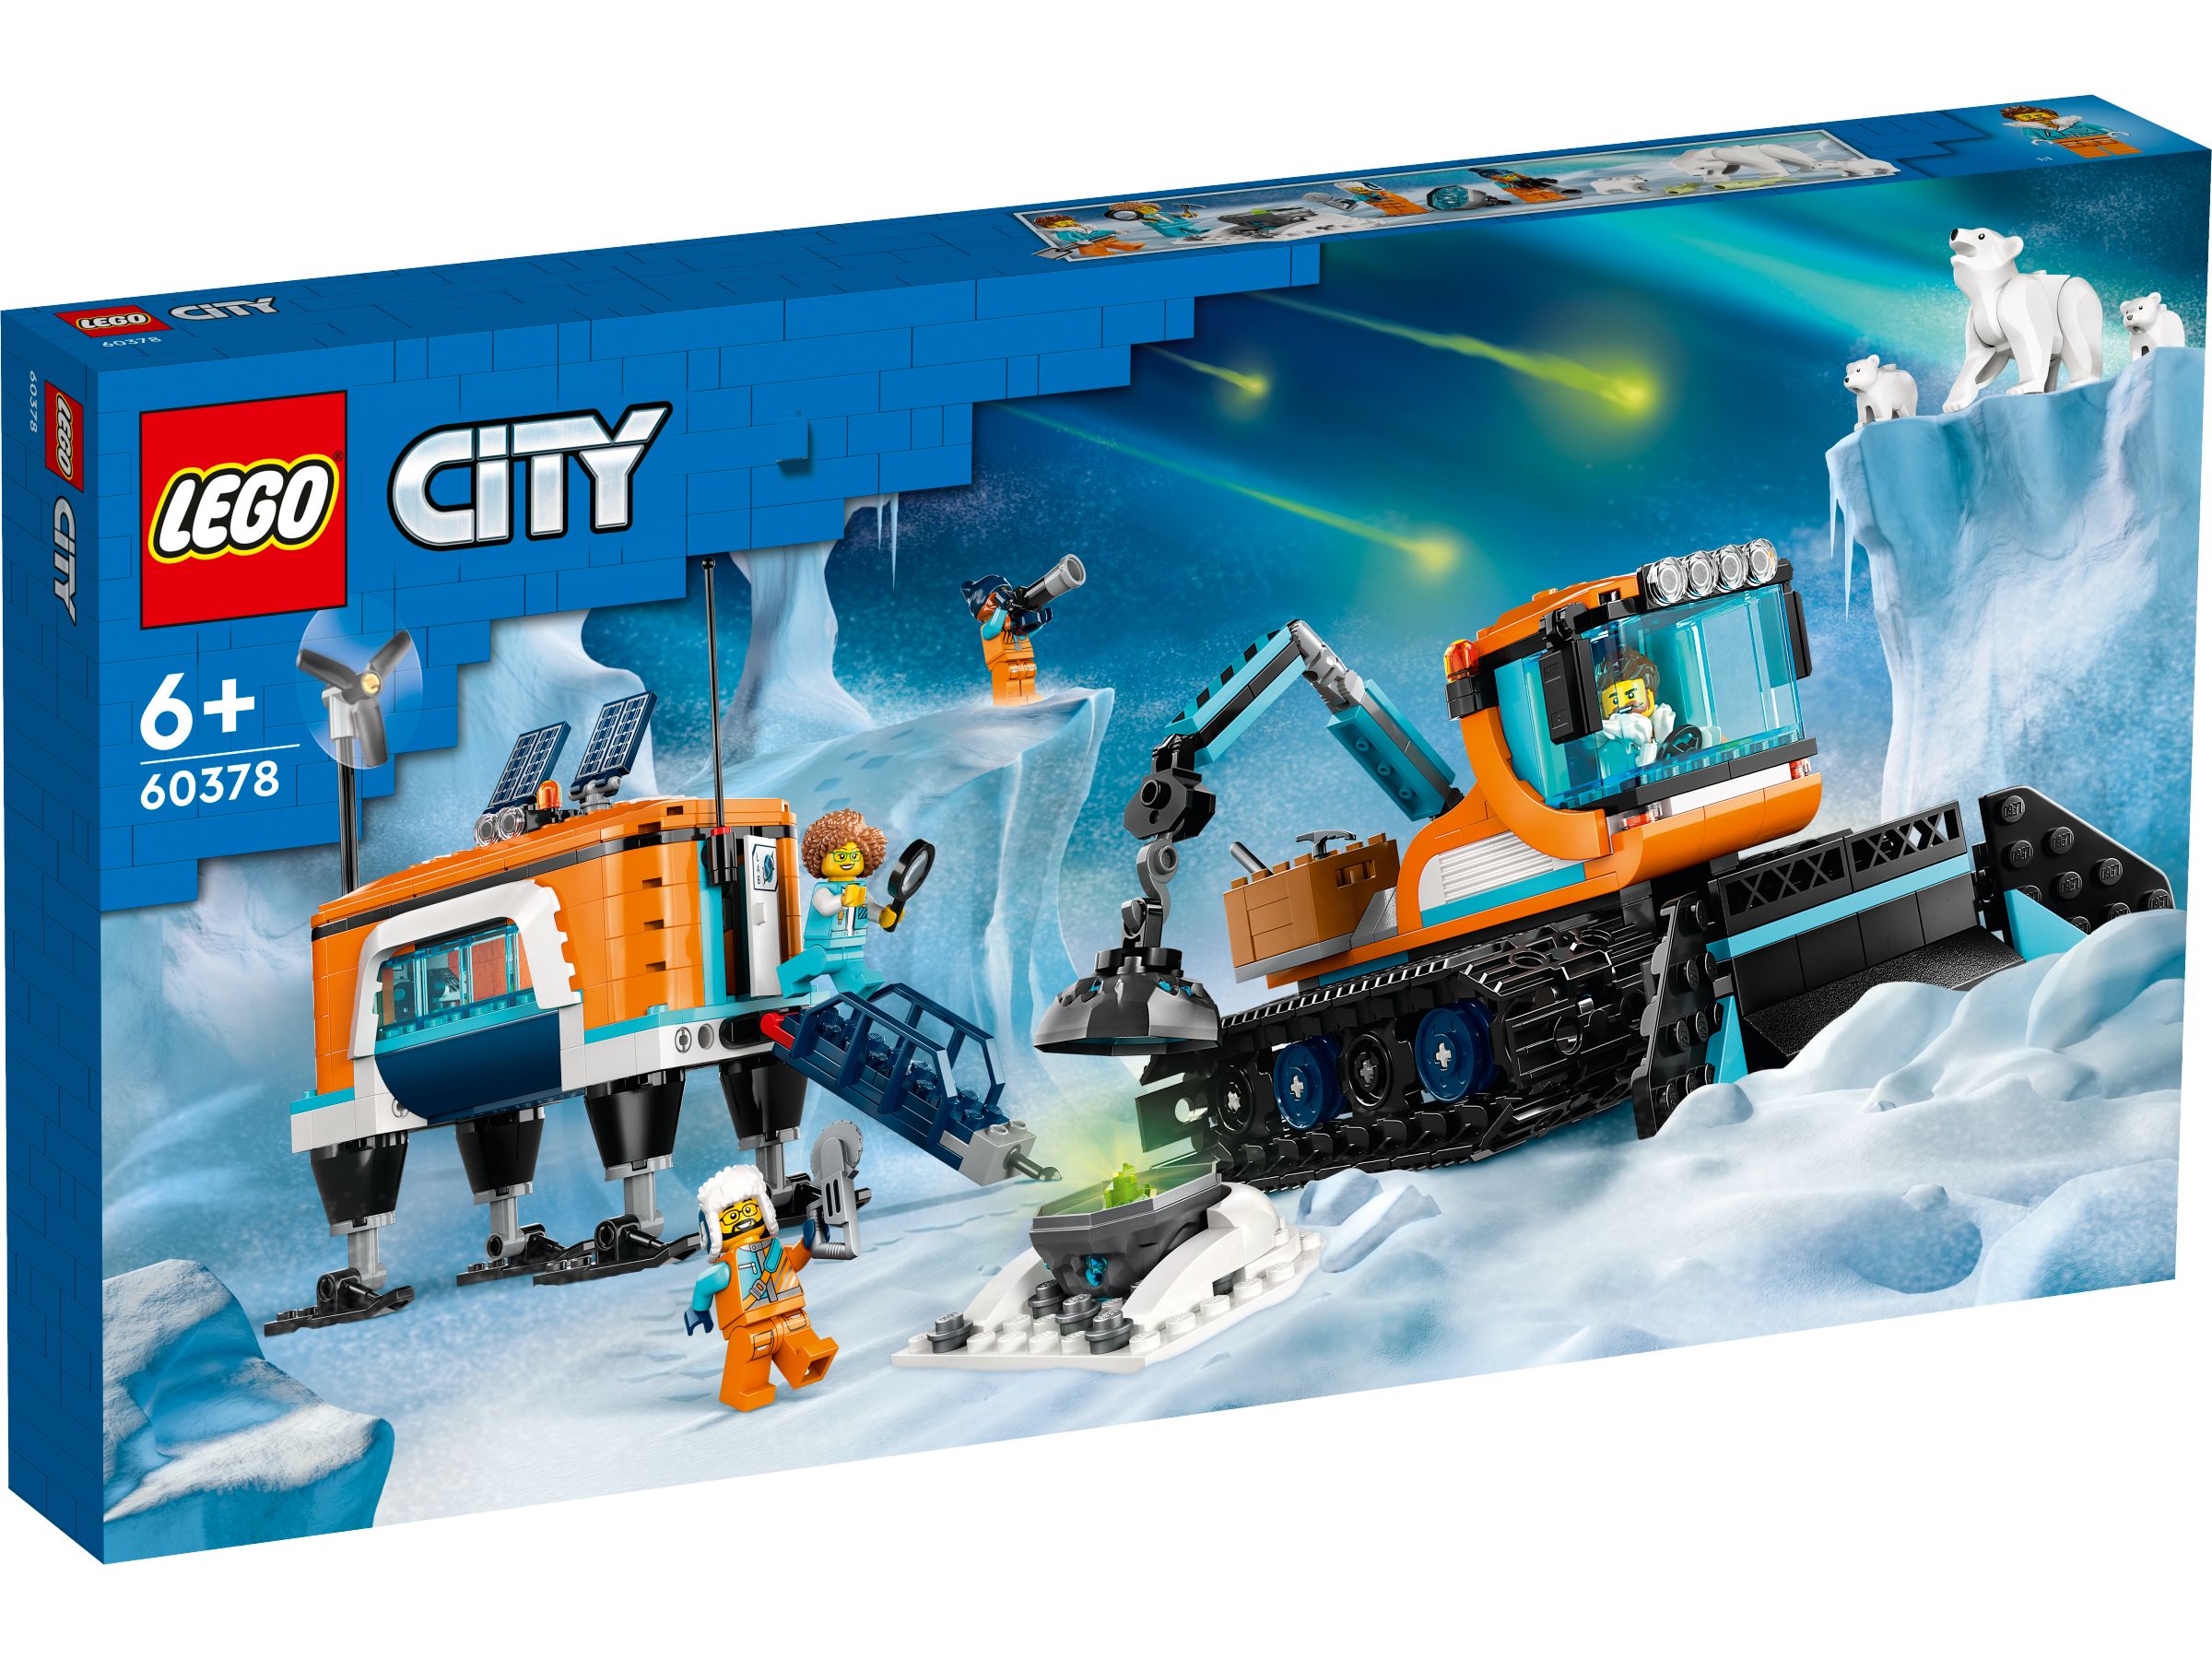 LEGO City 60378 Arktis-Schneepflug mit mobilem Labor LEGO_60378_Box1_v29.jpg